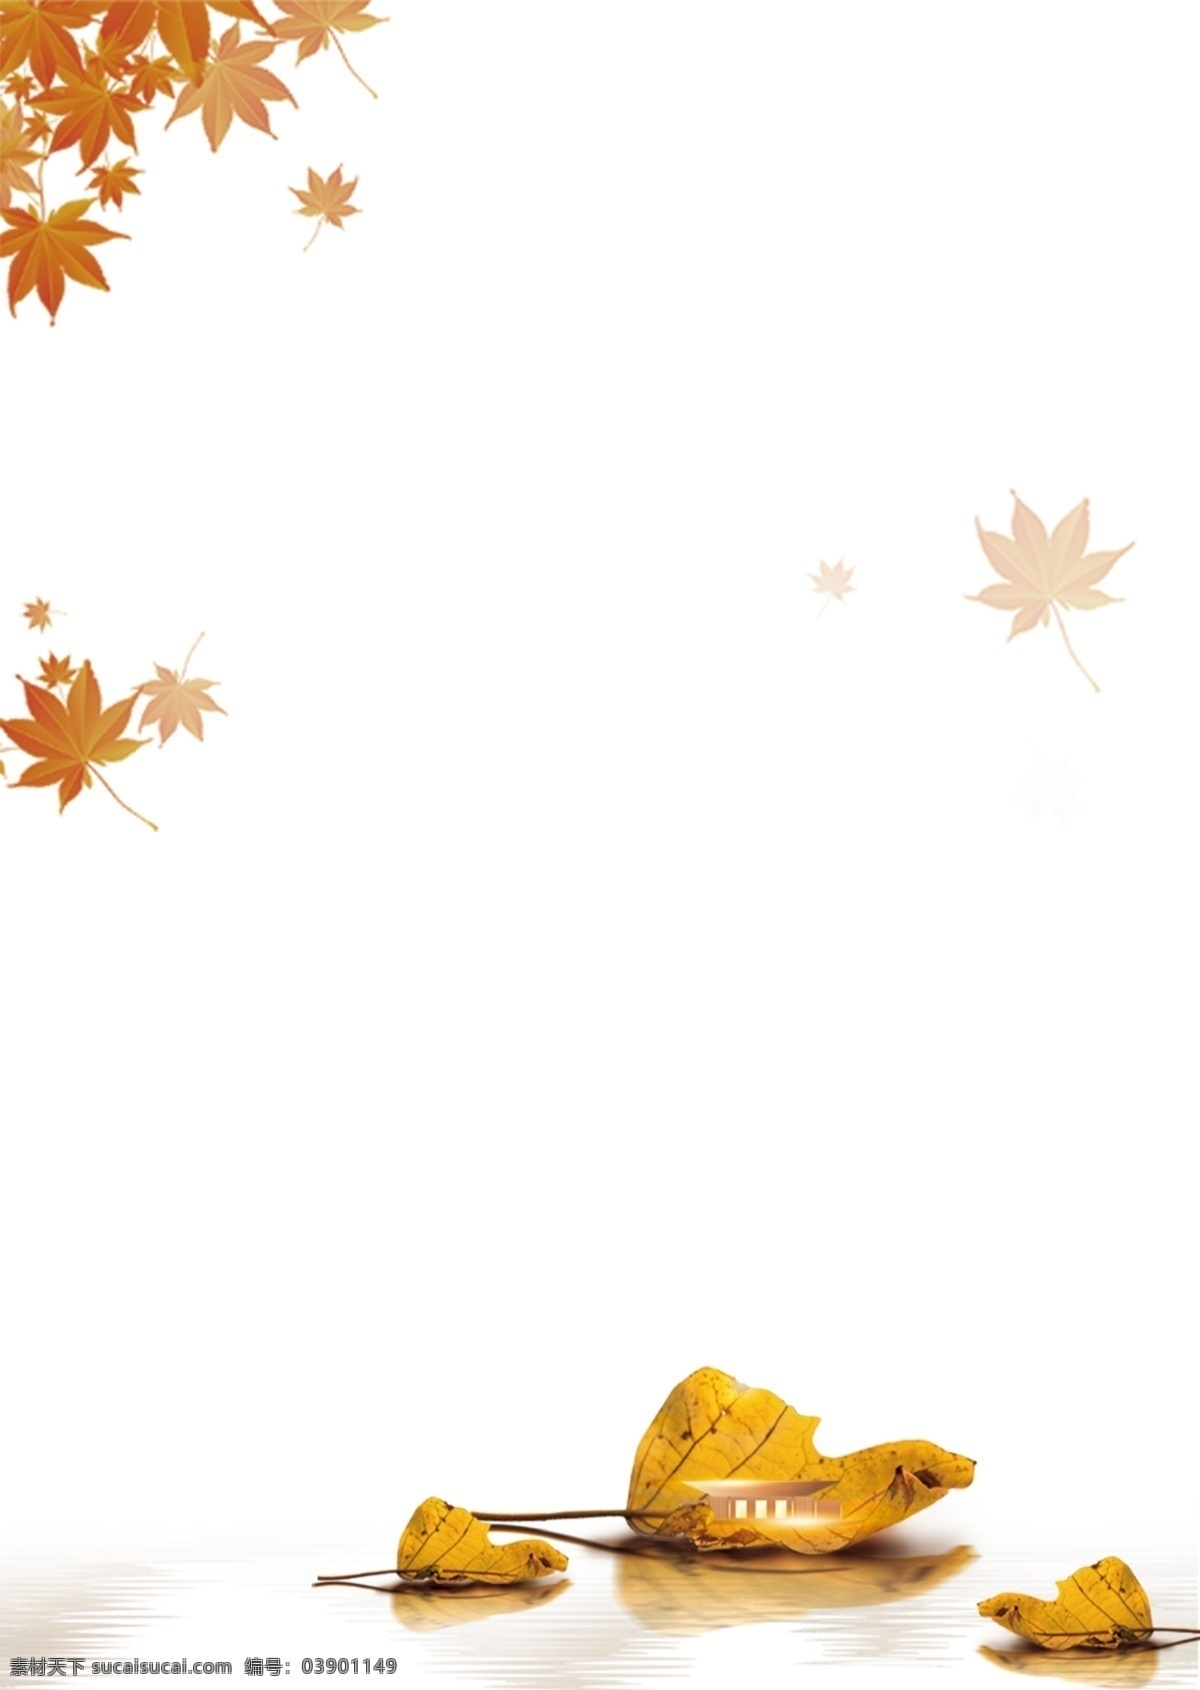 秋天落叶图片 秋天 立秋 落叶 水面 秋季 背景 分层 背景素材